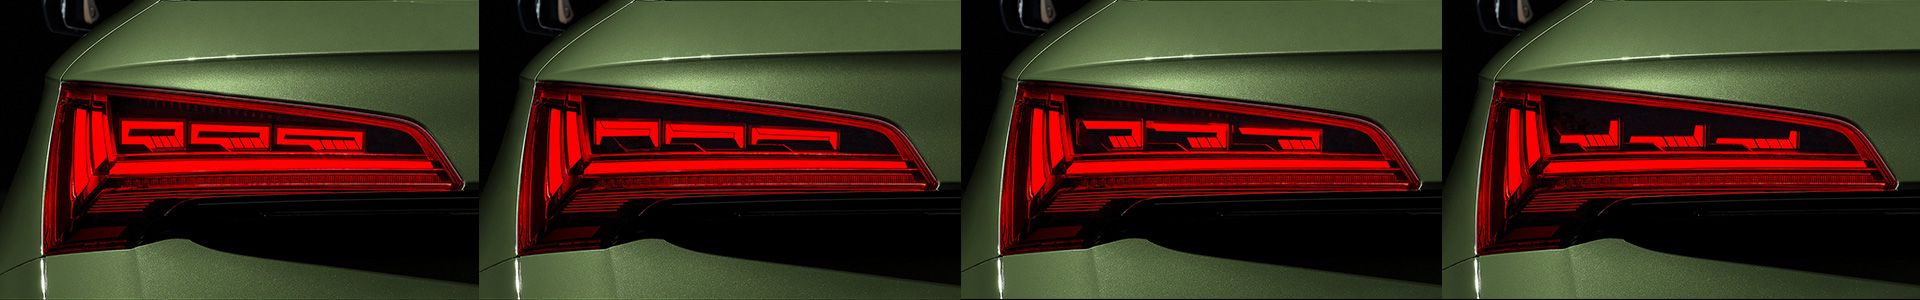 Der Audi Q5 mit digitalen OLED-Heckleuchten